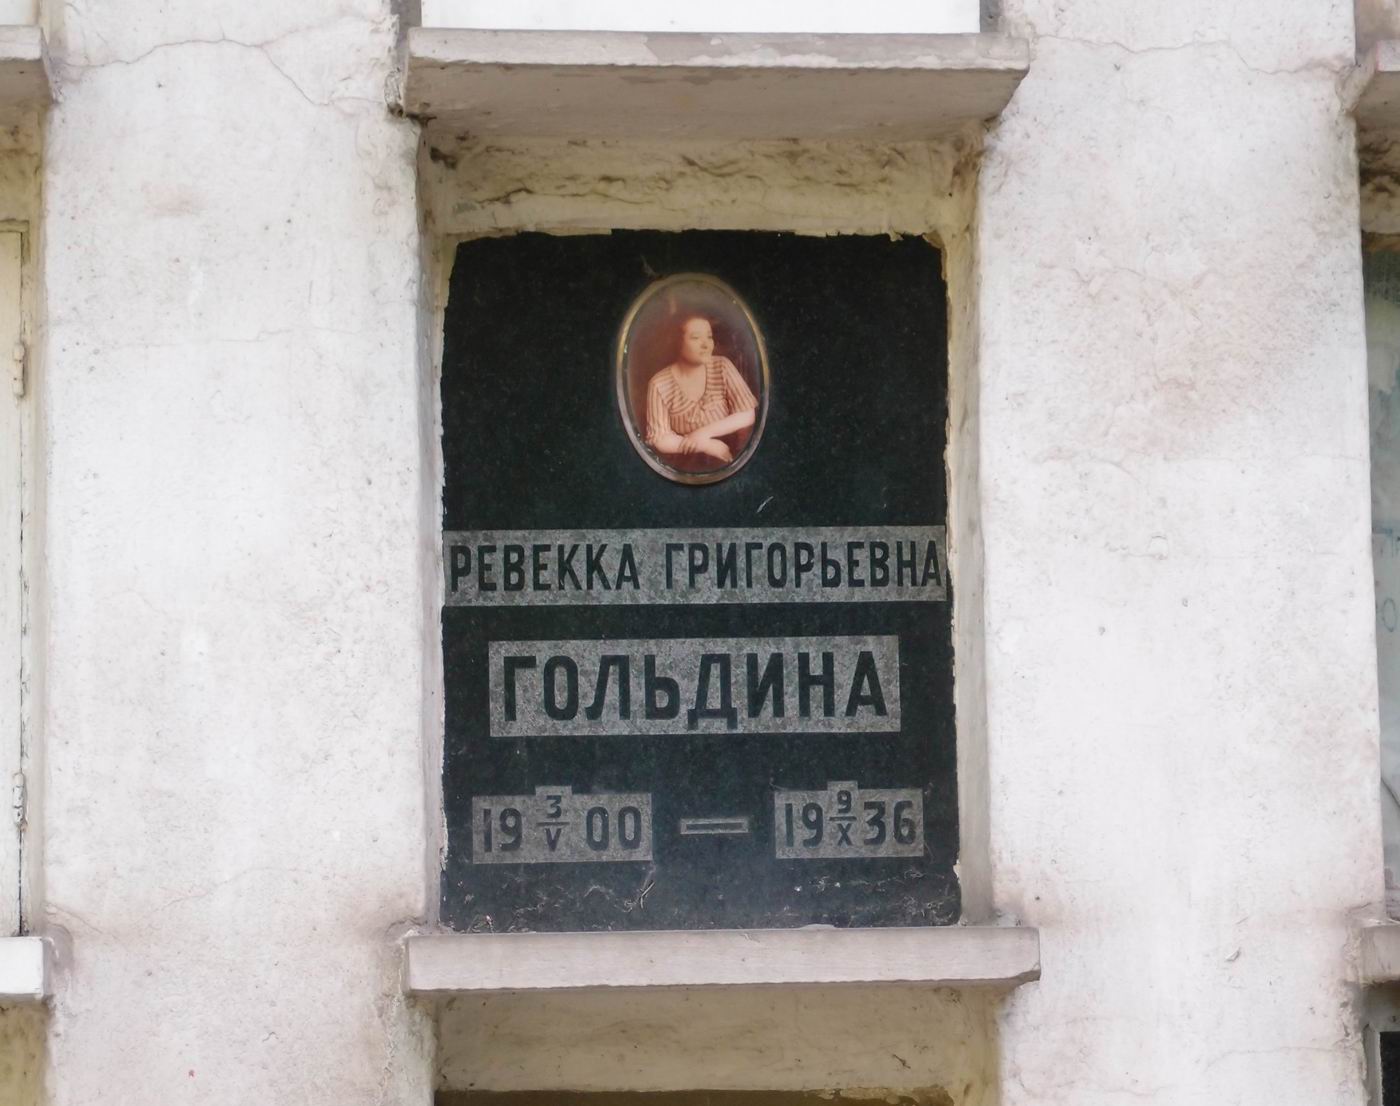 Плита на нише Гольдиной Р.Г. (1900-1936), на Новодевичьем кладбище (колумбарий [40]-3-2).